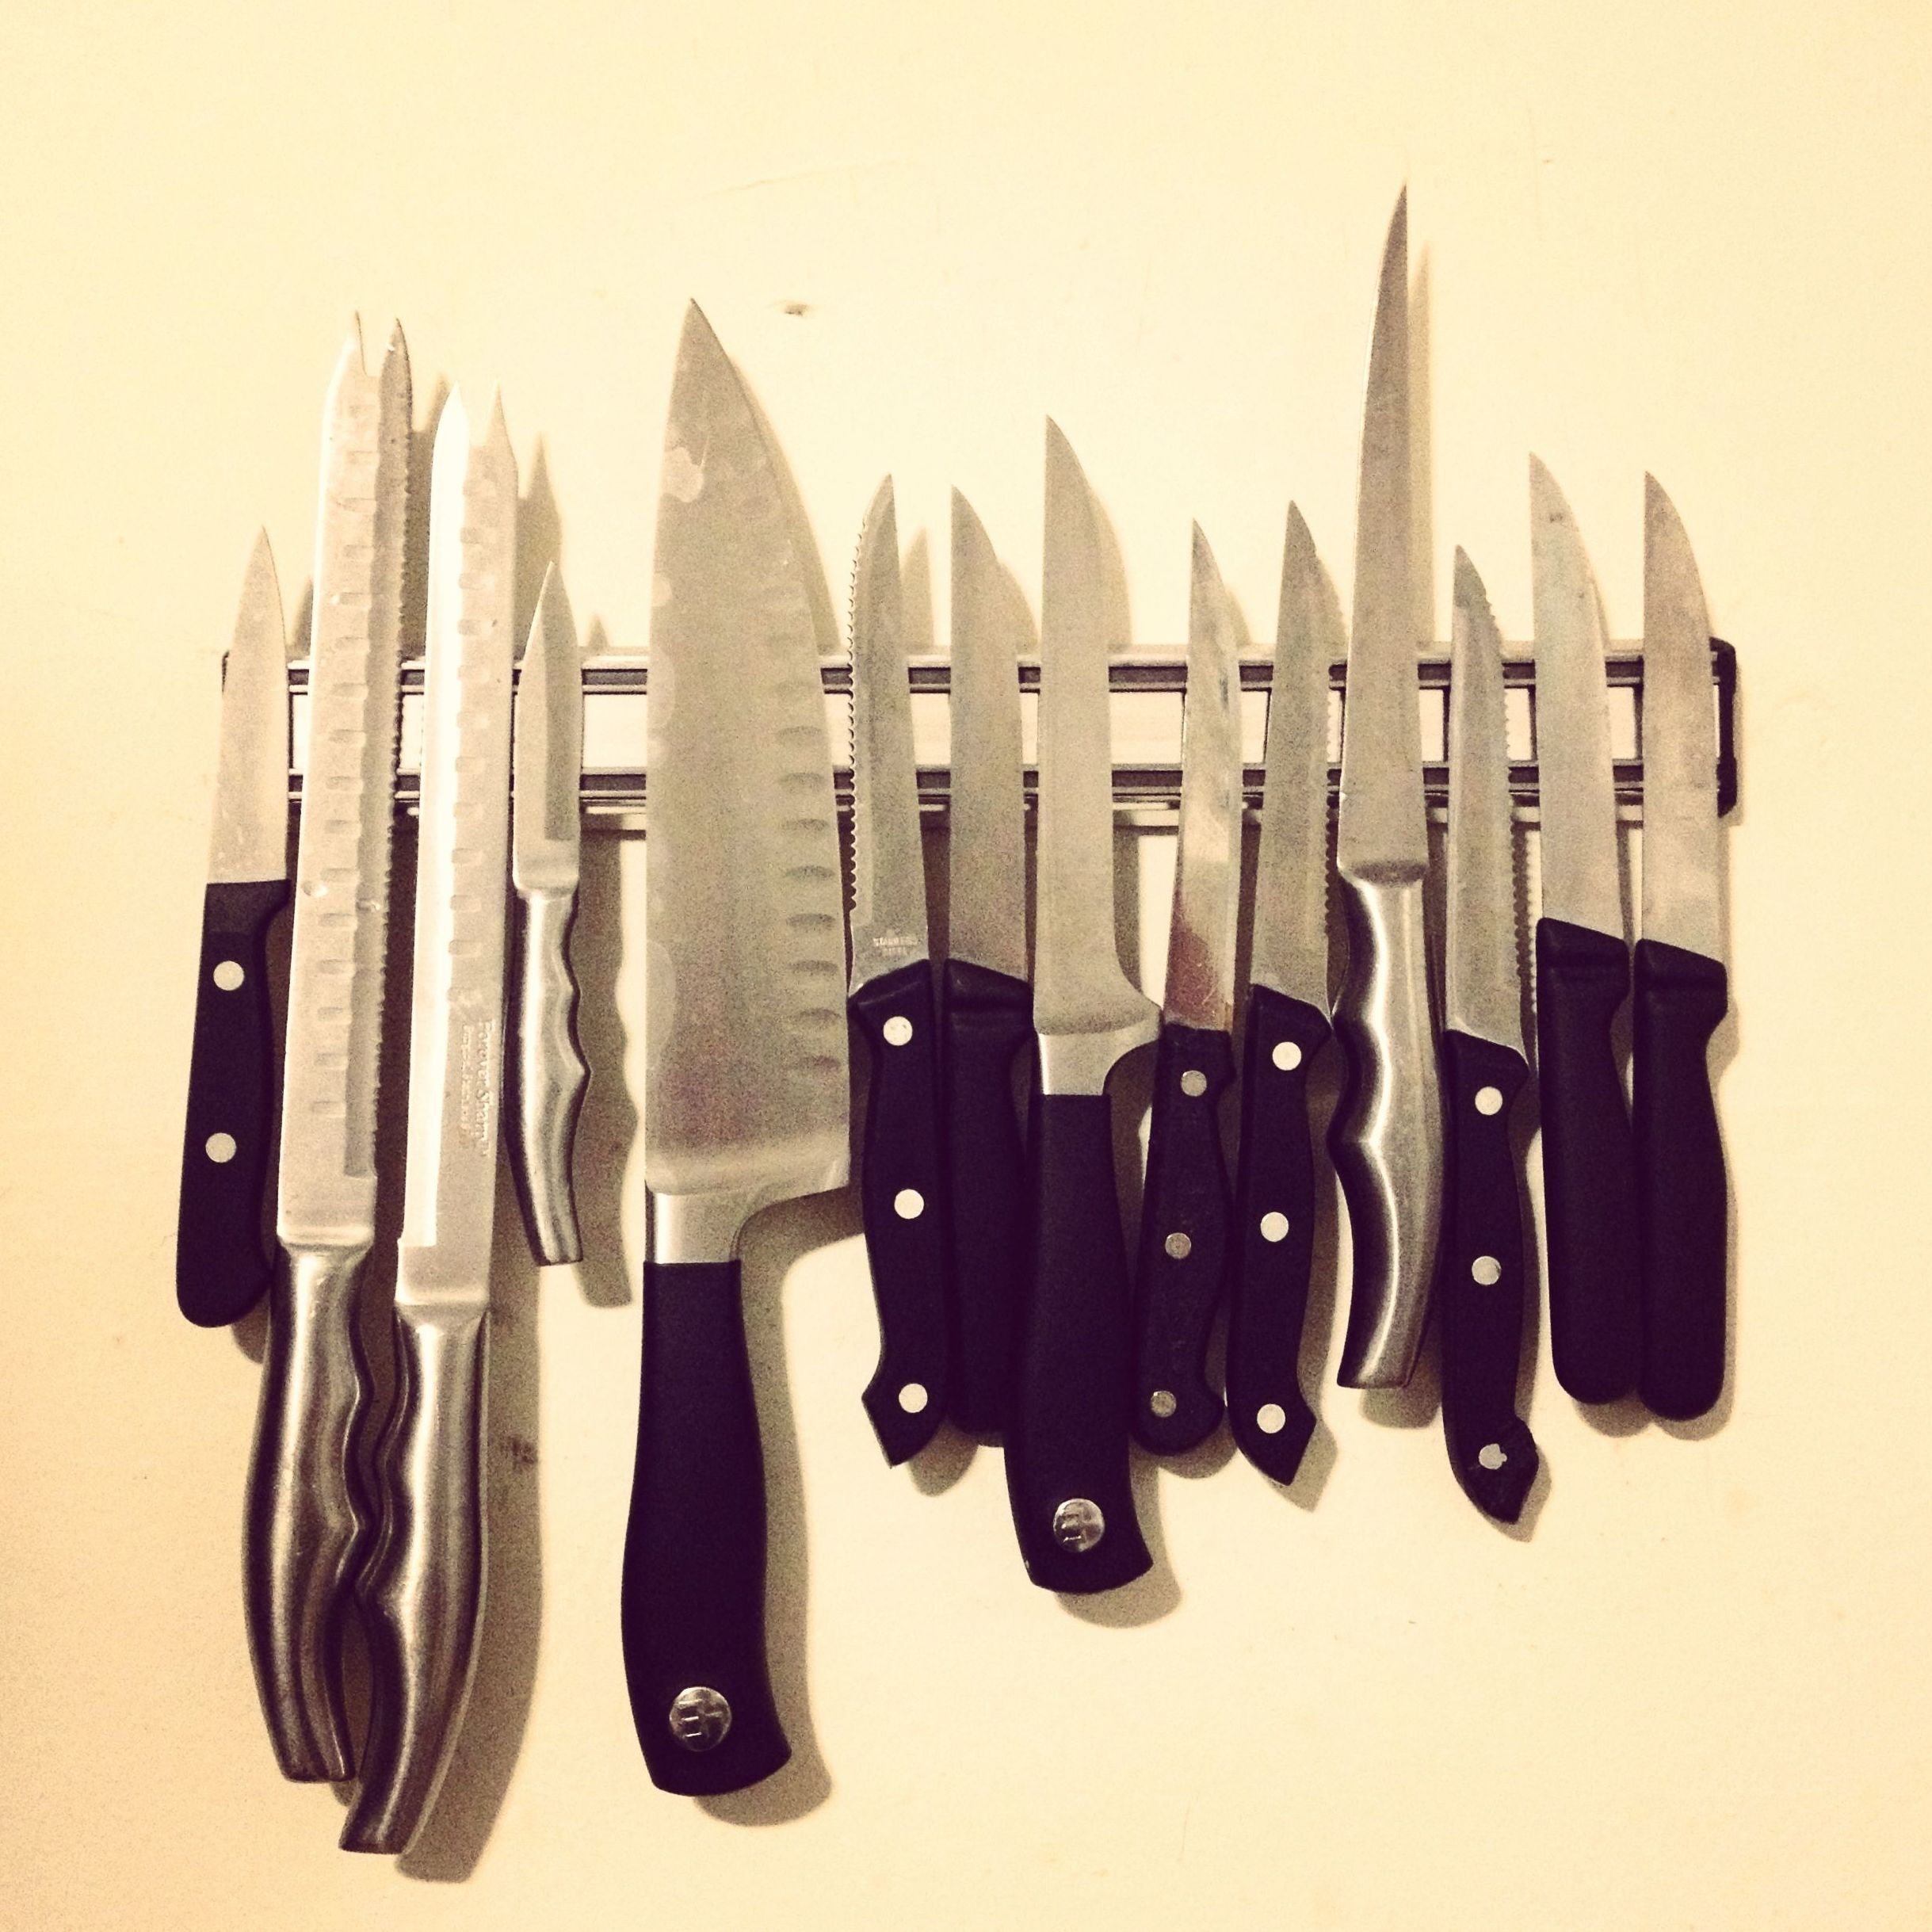 Venta de todo tipo de cuchillos